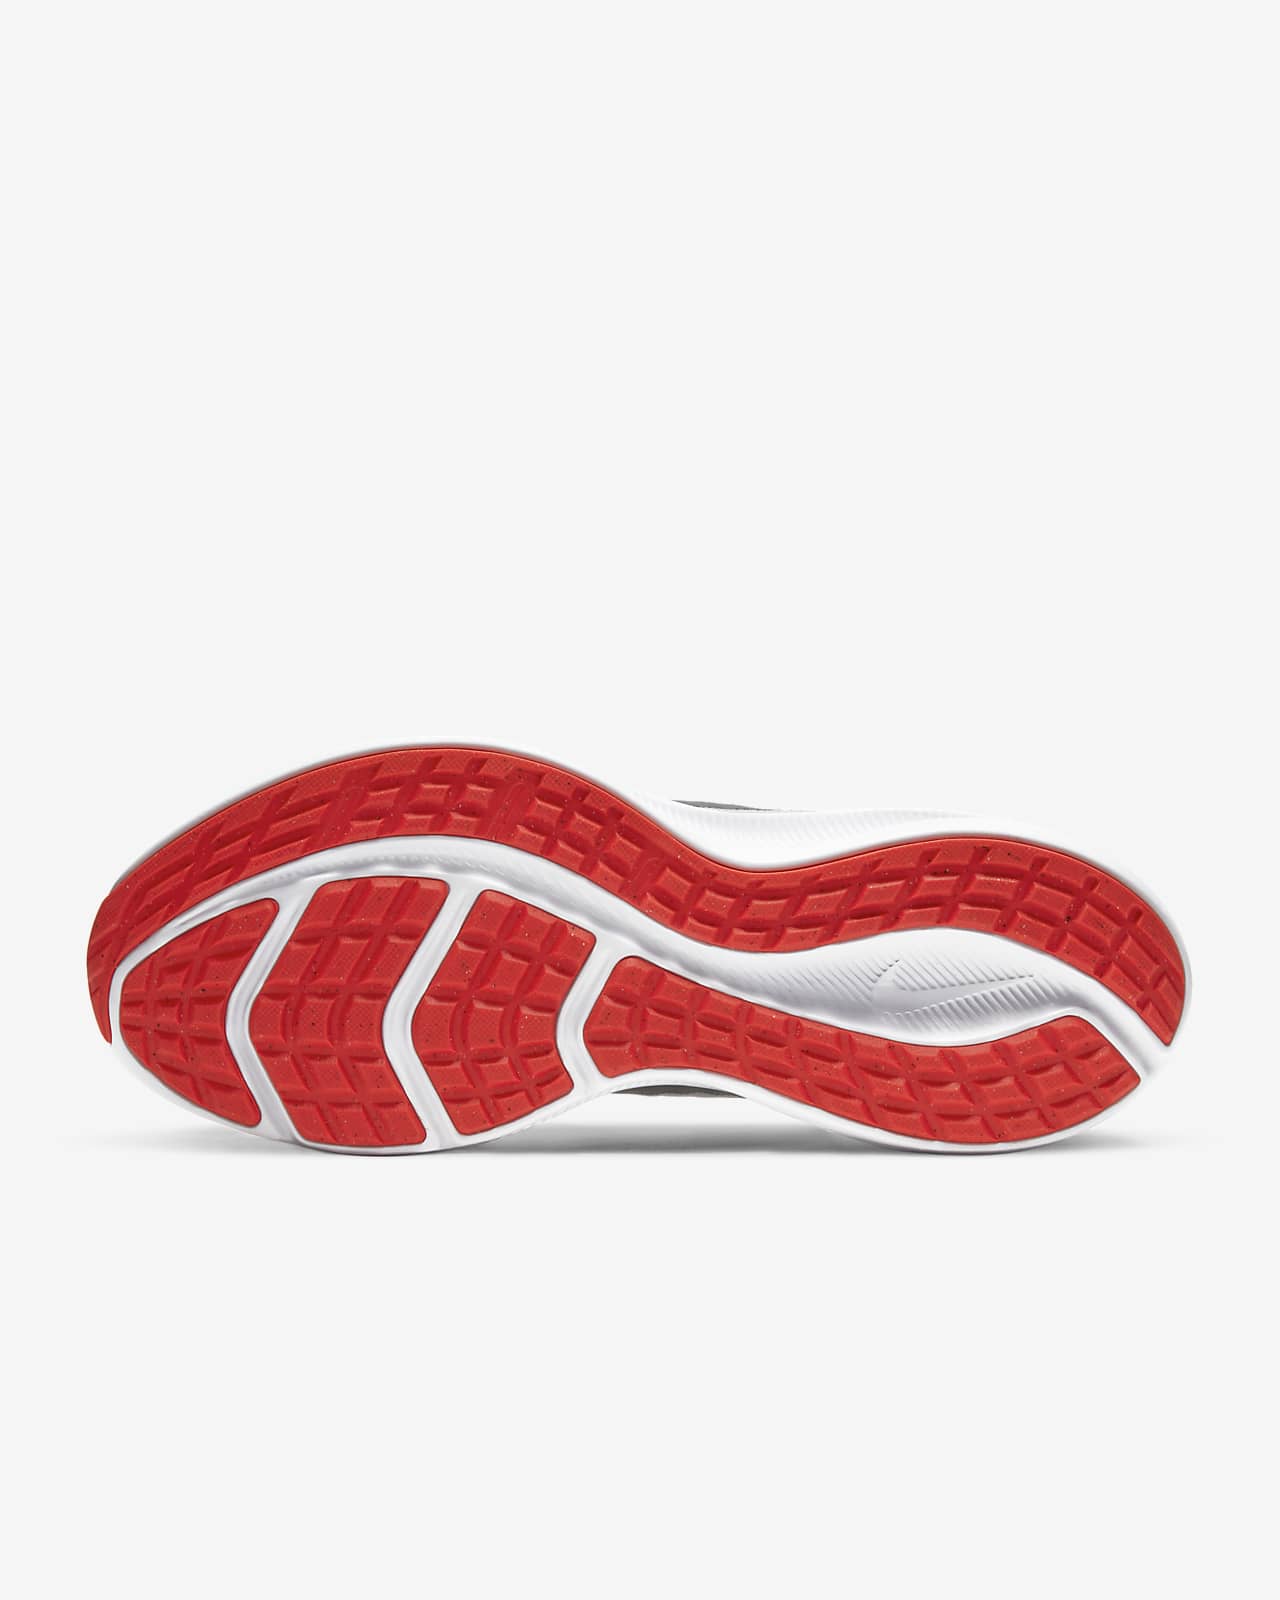 nike red running shoe